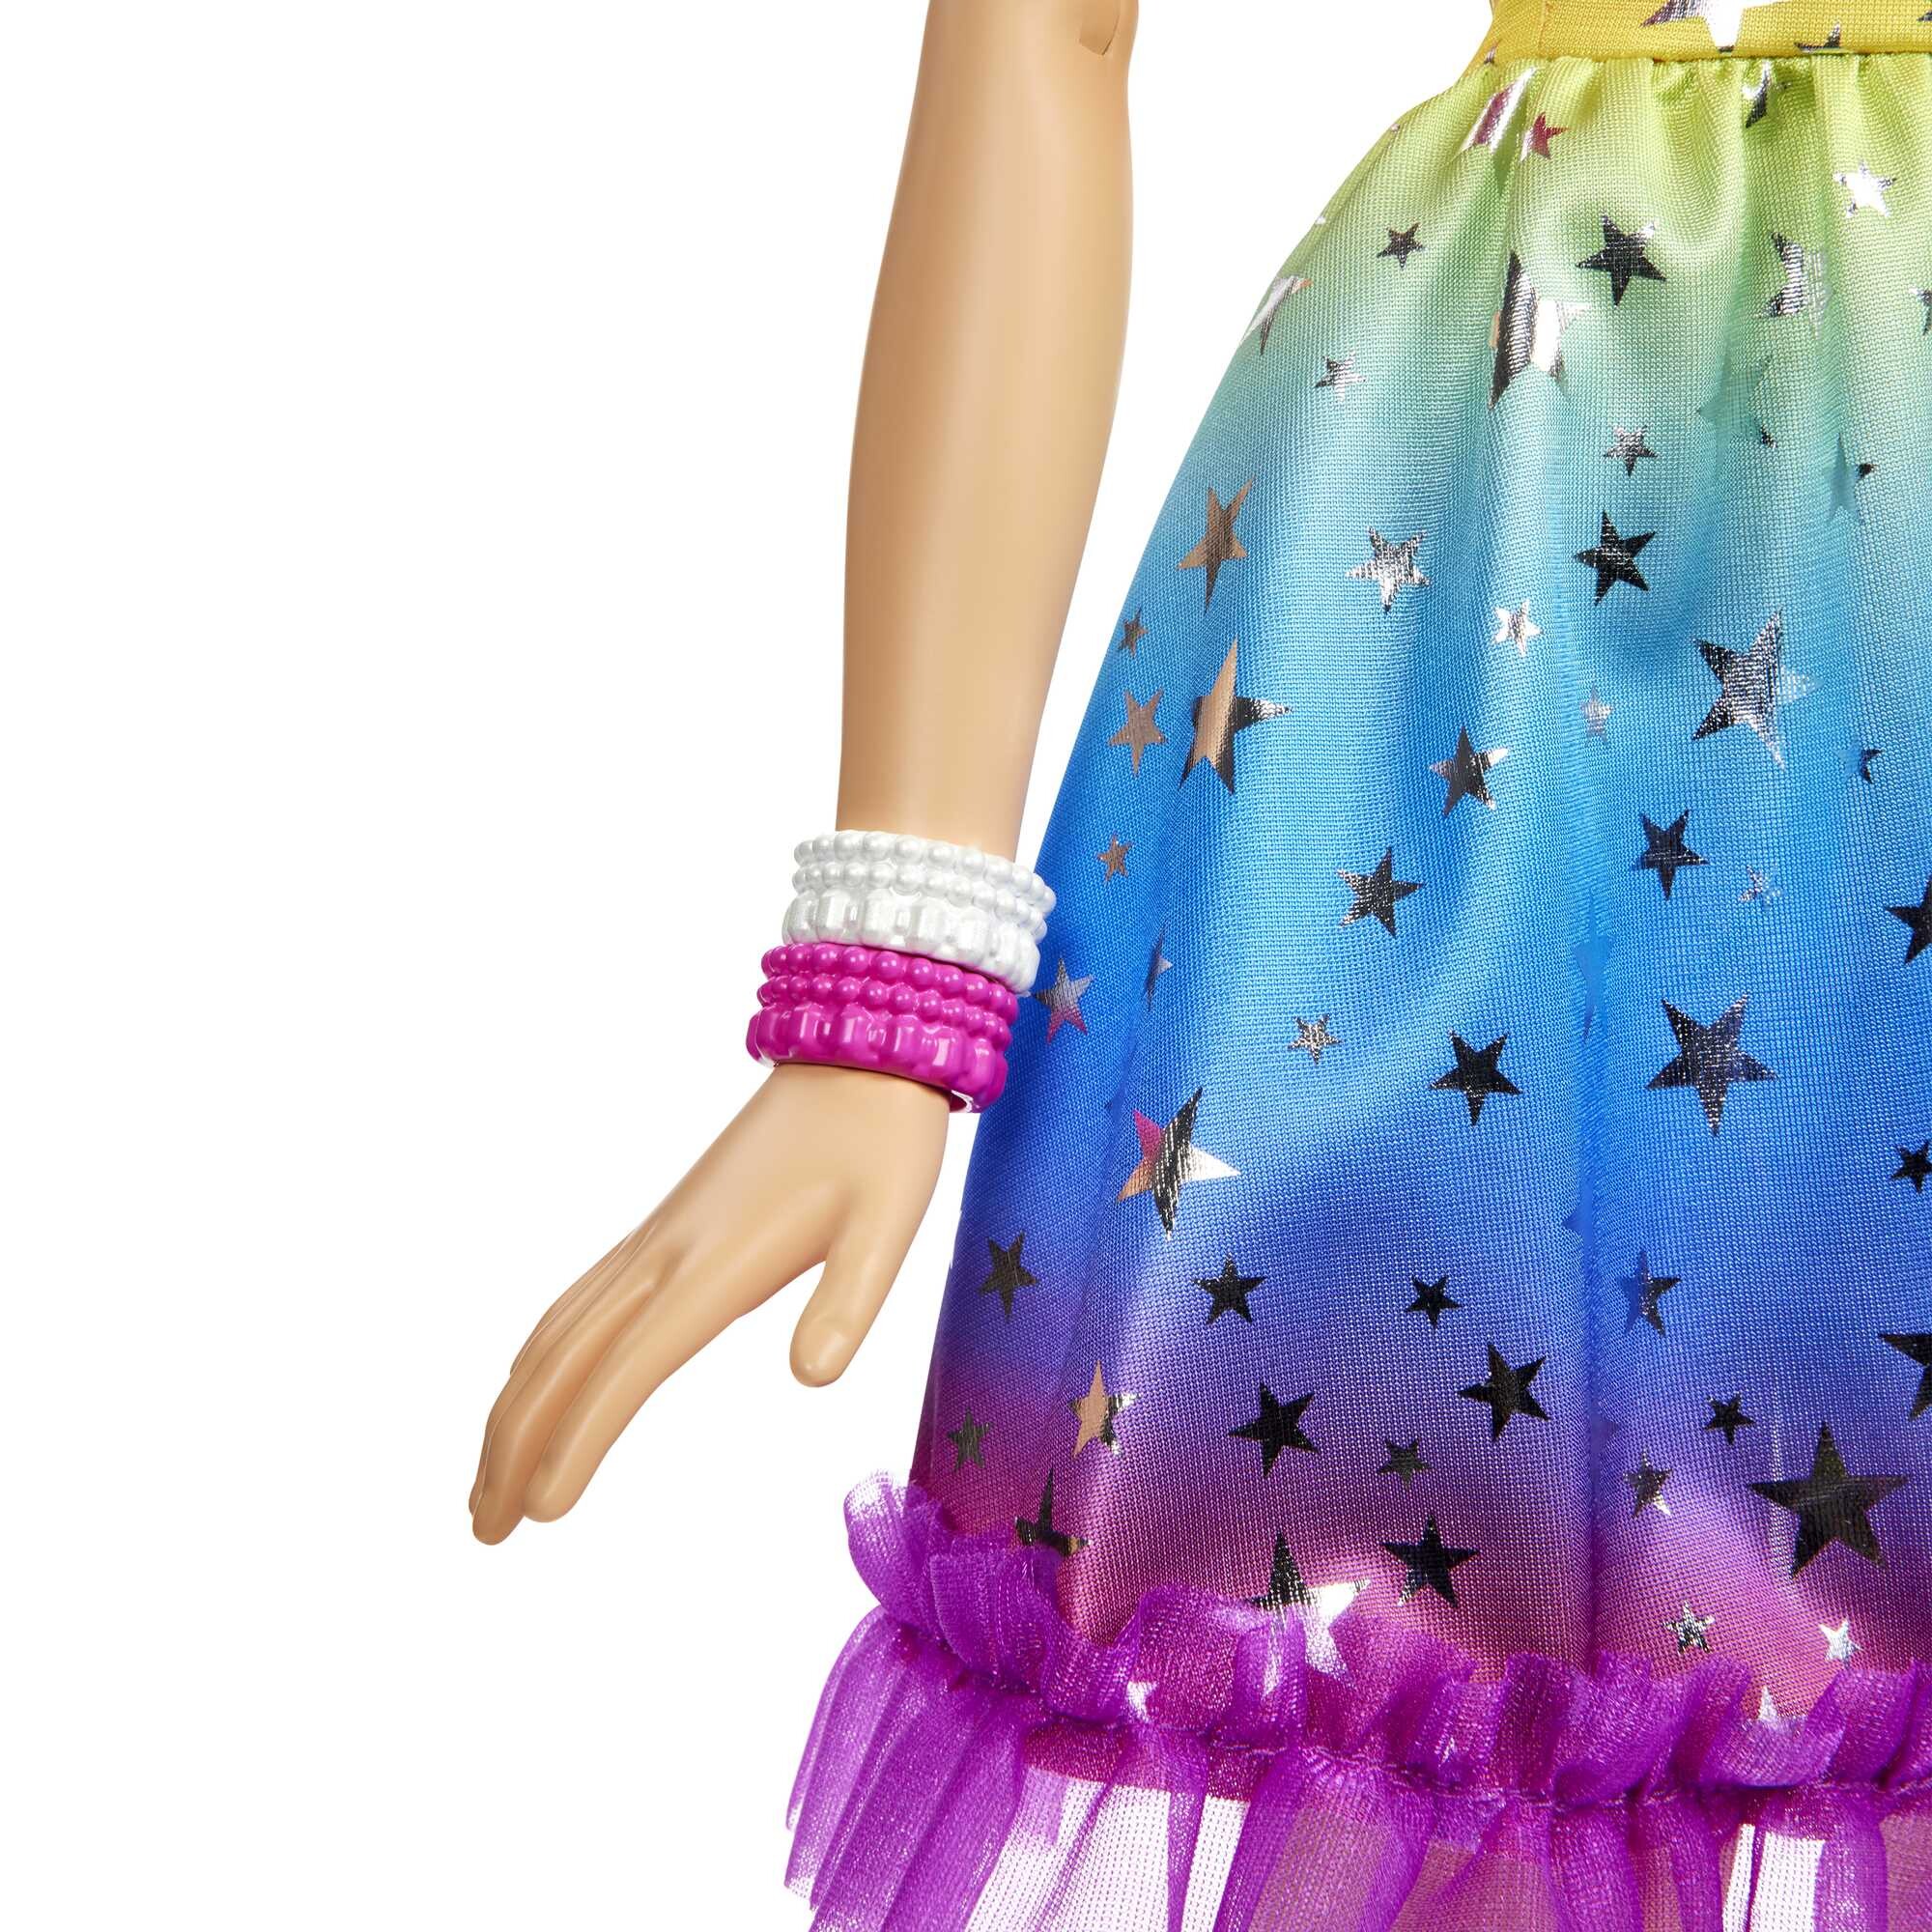 Bambola barbie alta 71 cm con abito arcobaleno e accessori moda - Barbie